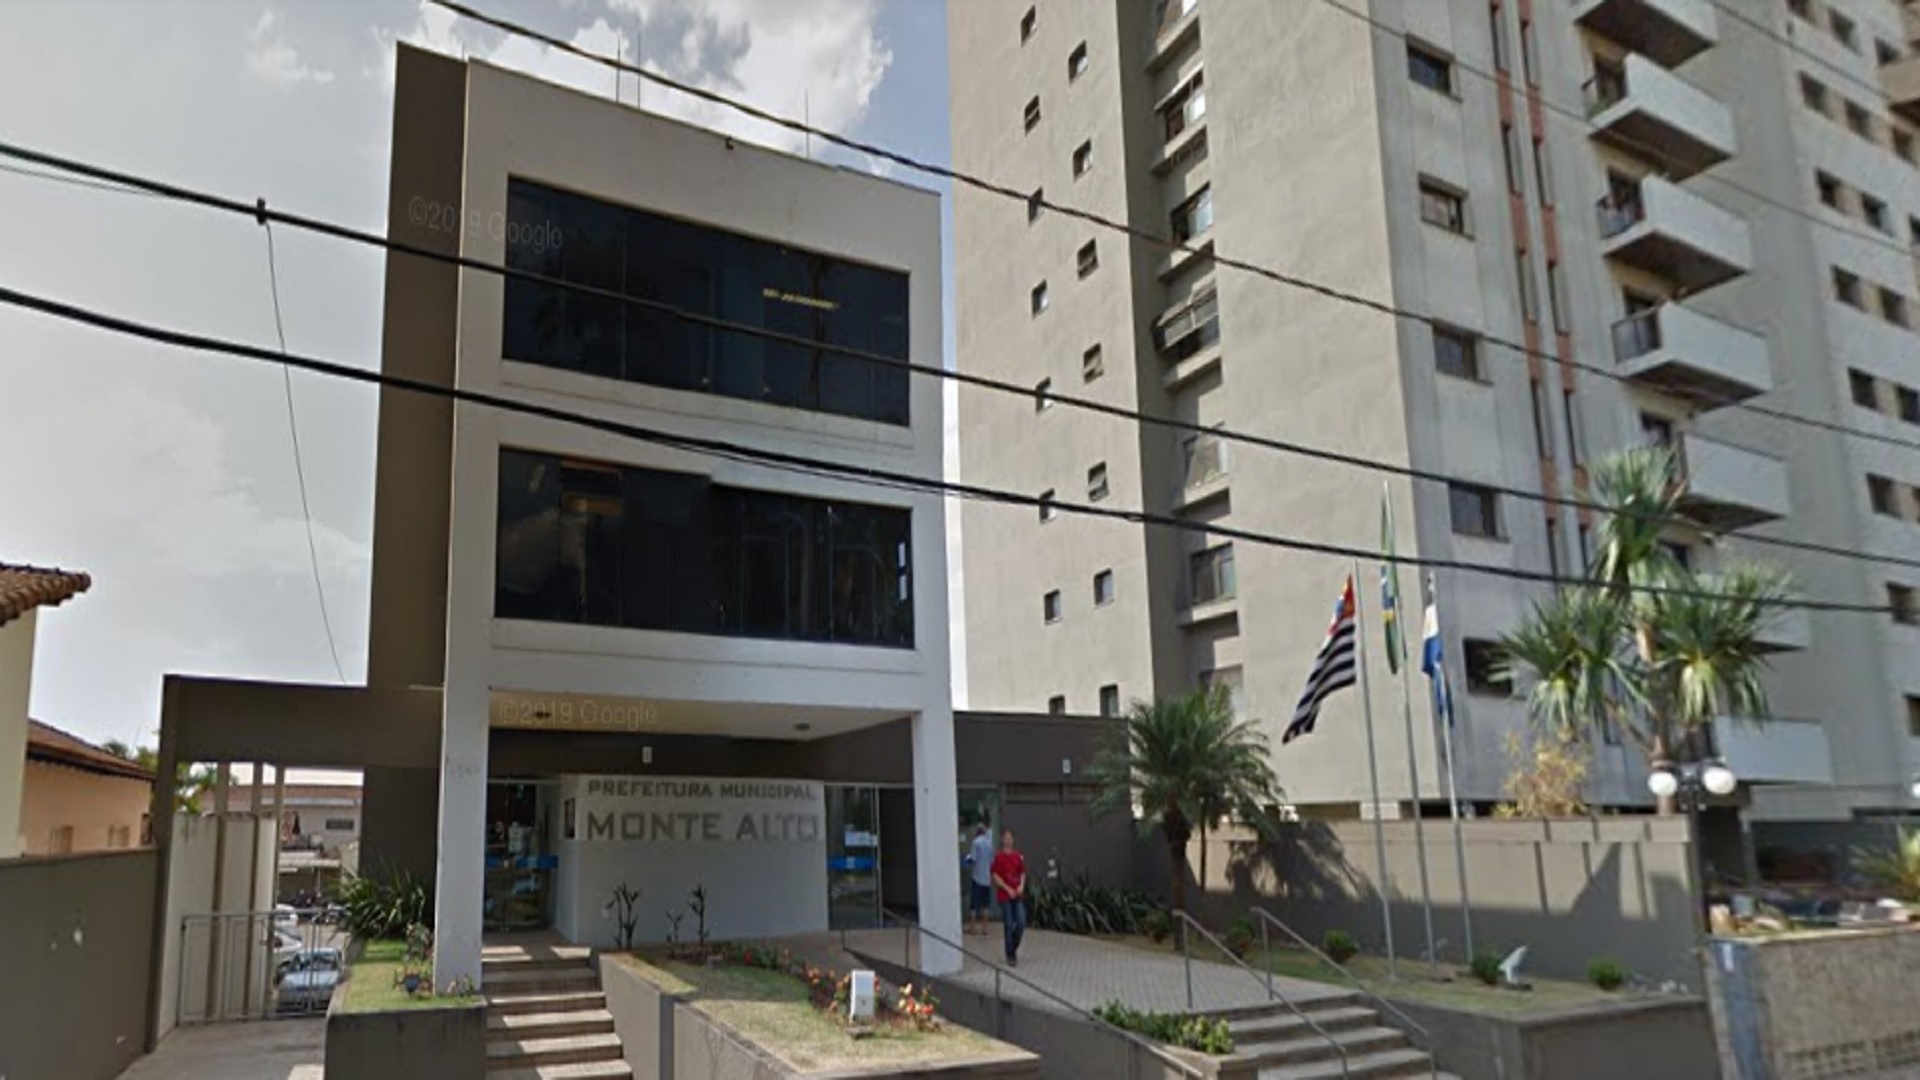 Monte Alto sedia Festival de Jogos de Salão do Estado de São Paulo. –  Prefeitura Municipal de Monte Alto